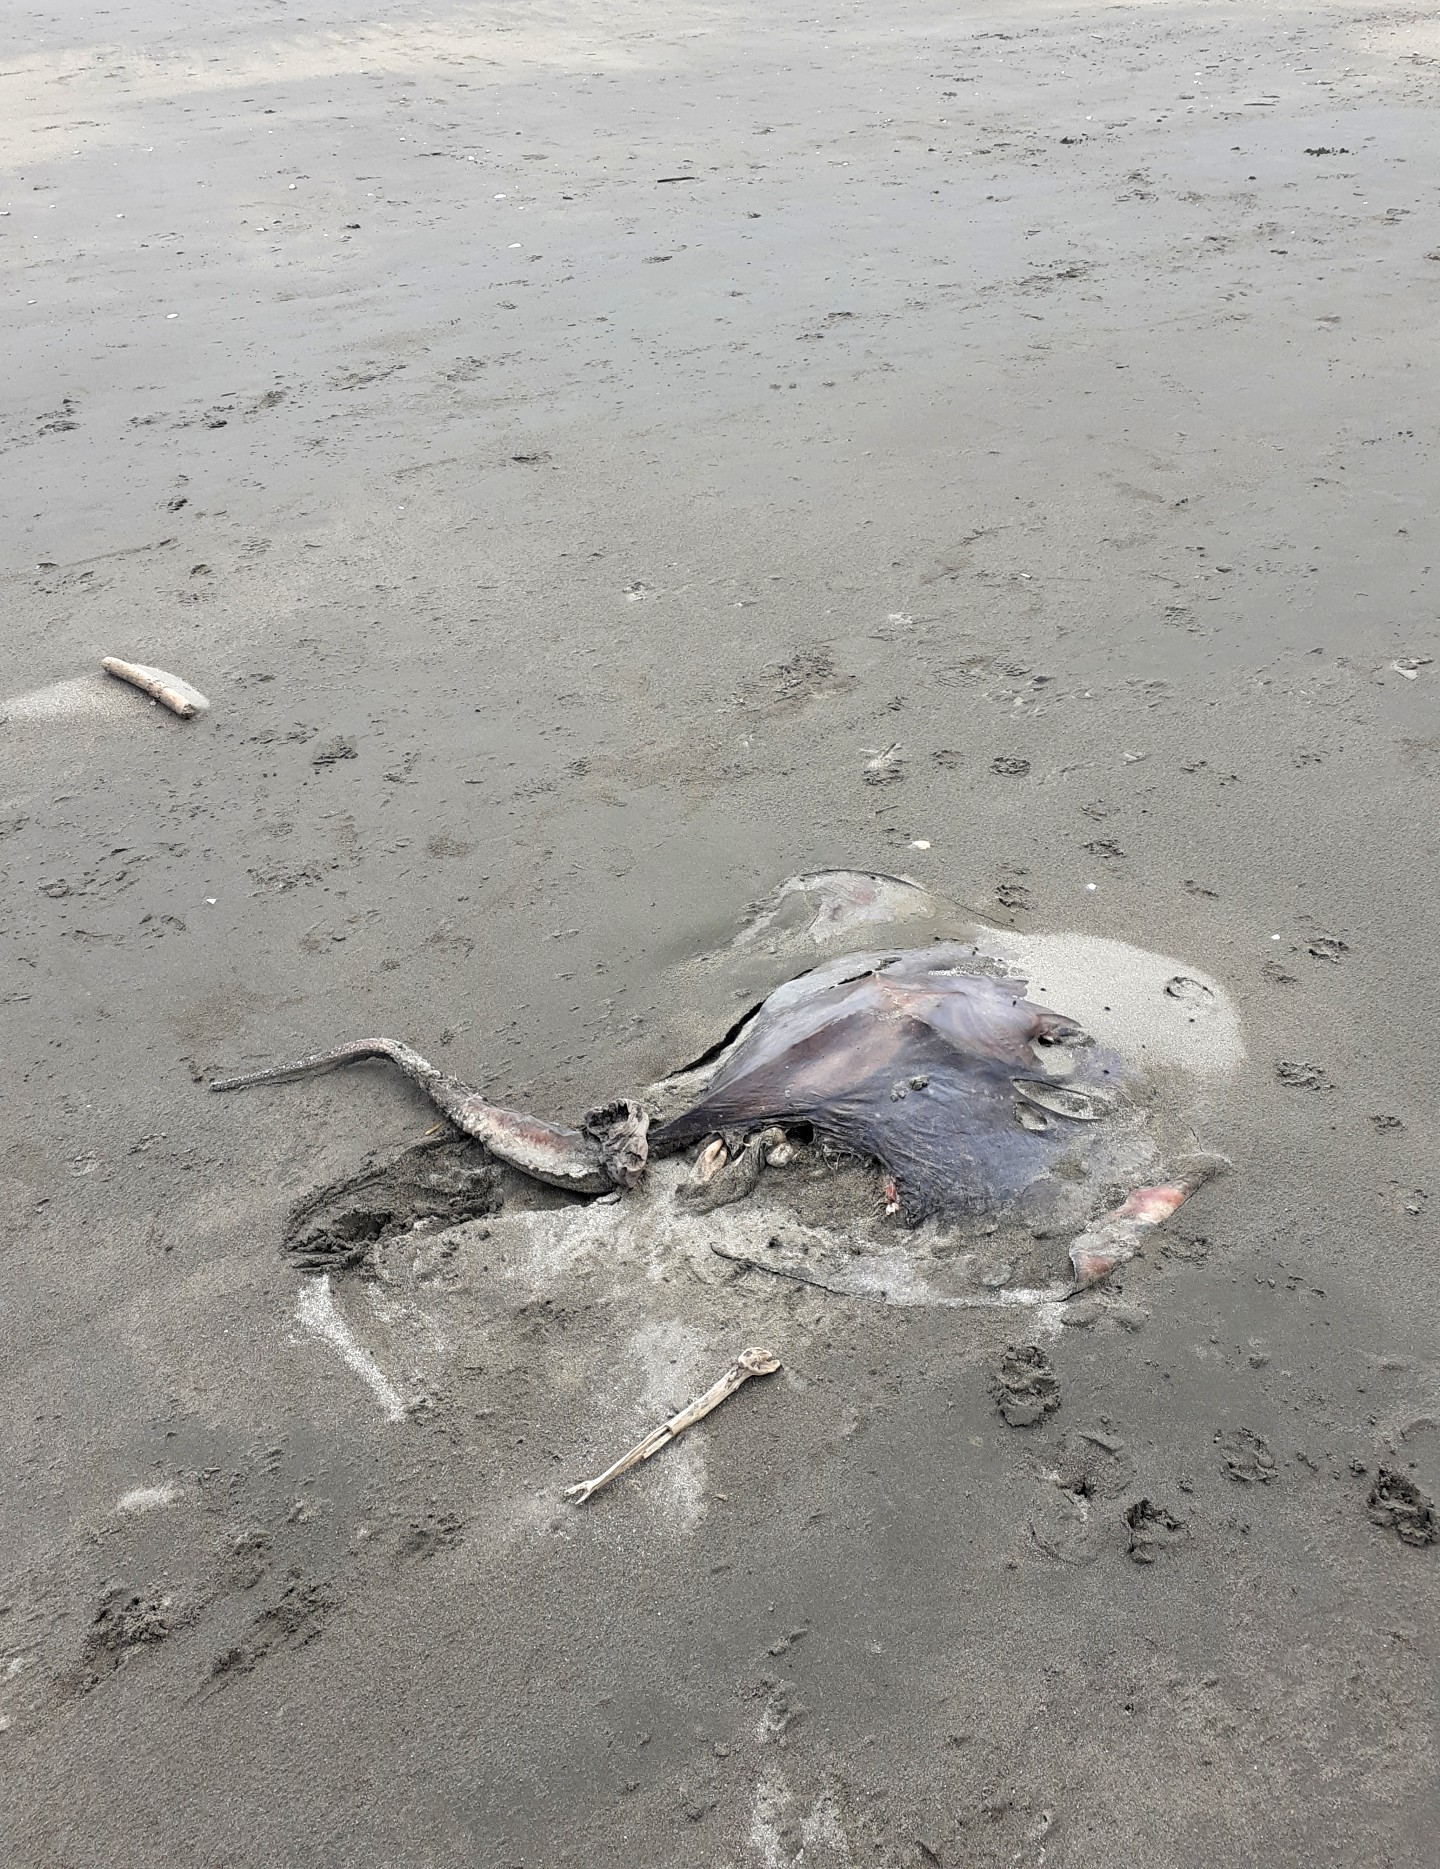  dead ray on a beach